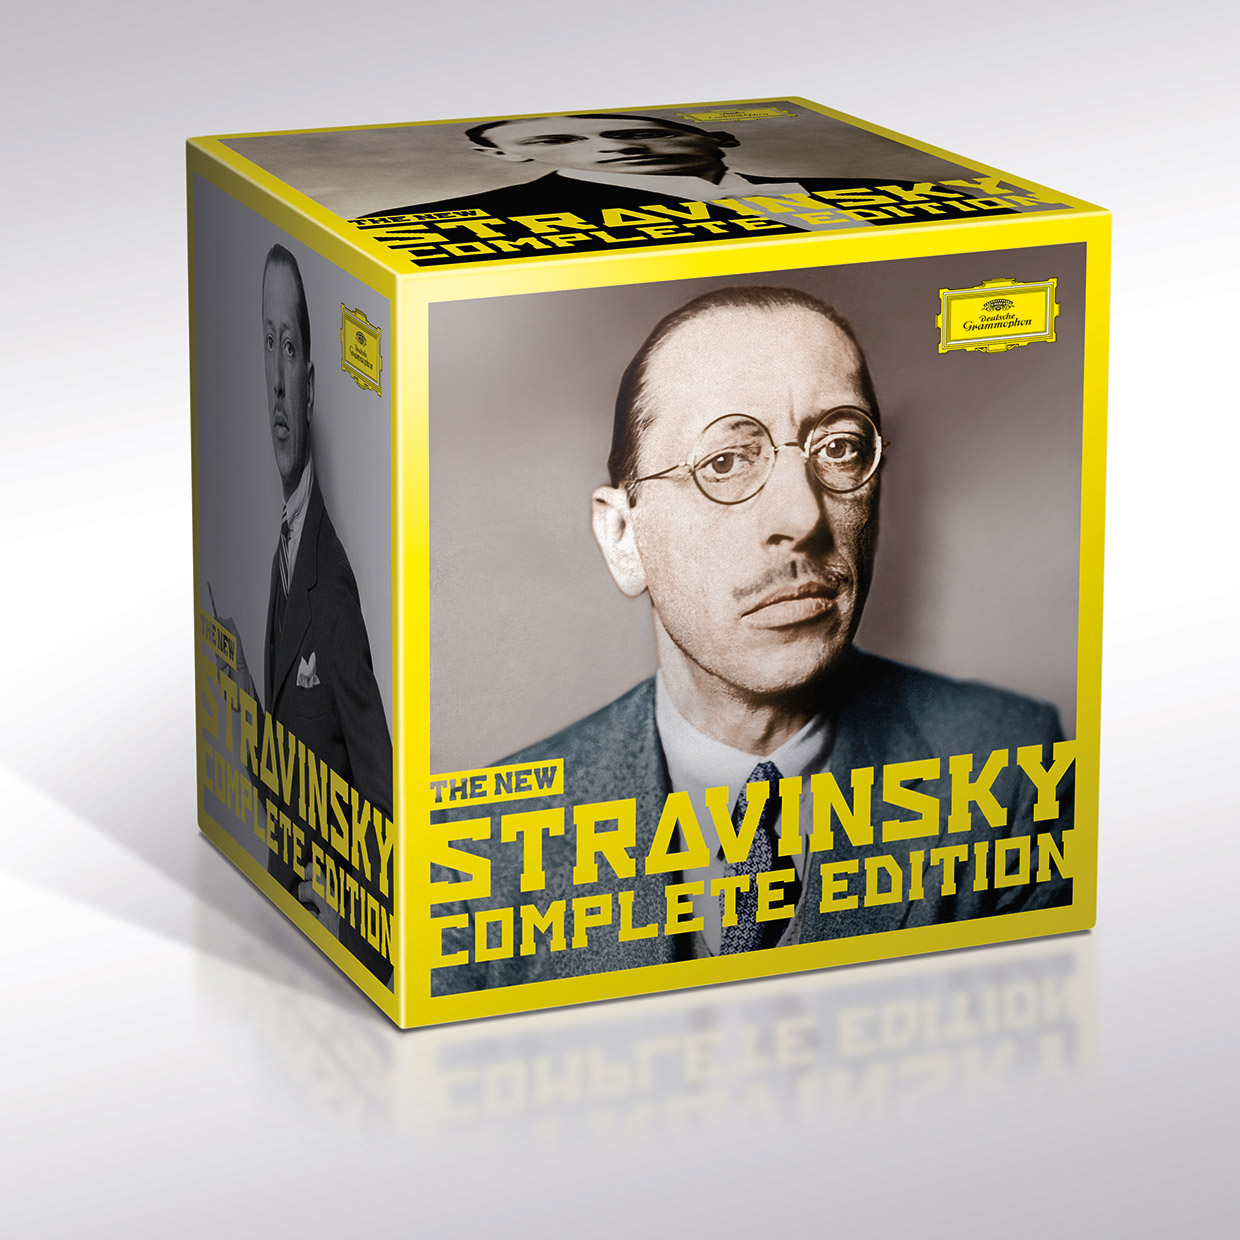 DG 스트라빈스키 작품 전집 (Deutsche Grammophon - Stravinsky: The New Complete Edition) 